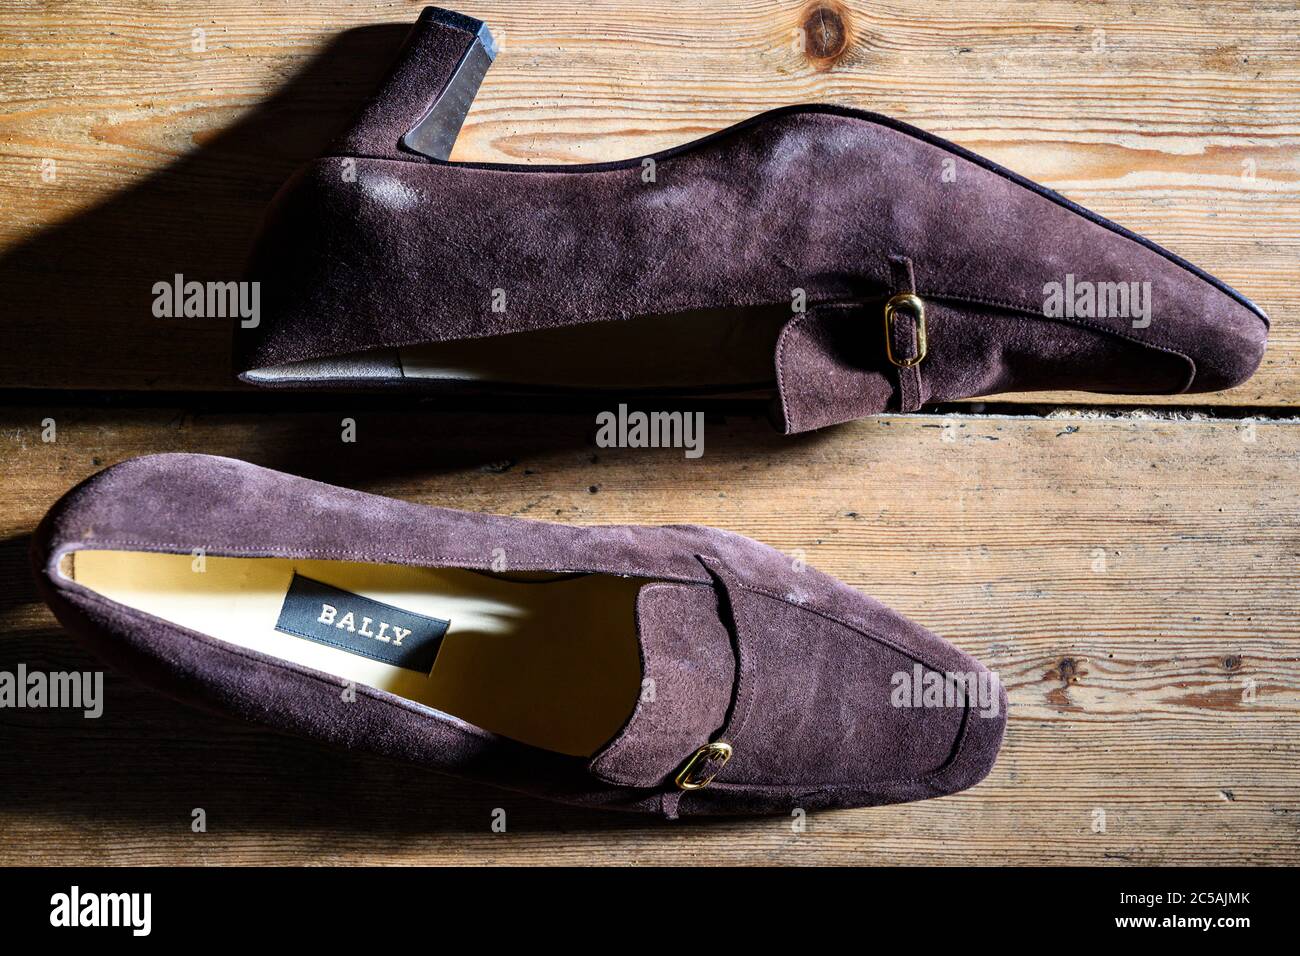 Bally shoes immagini e fotografie stock ad alta risoluzione - Alamy